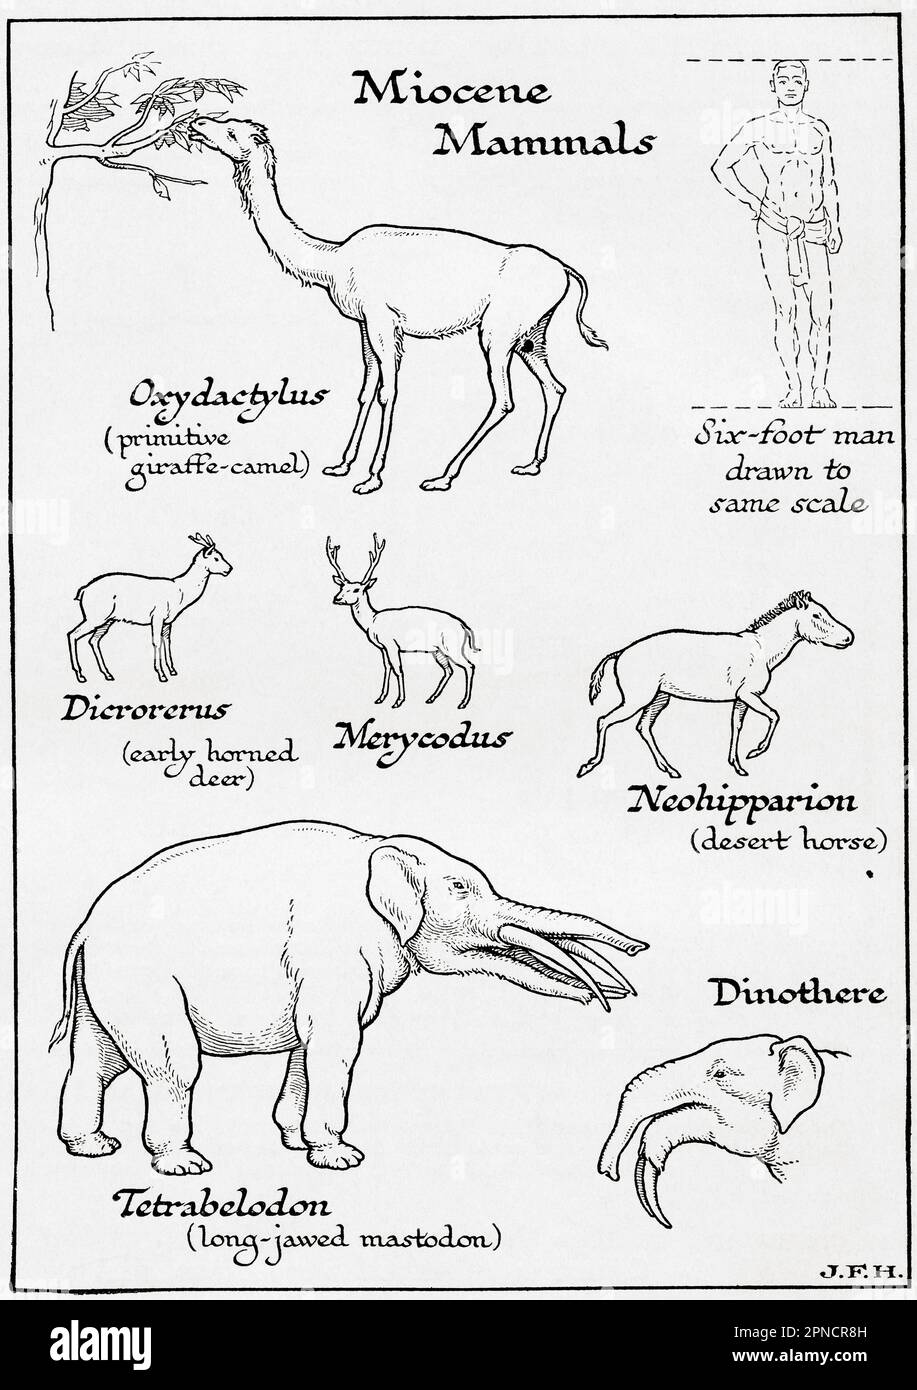 Diagramm von Miozene Säugetieren einschließlich Oxcydactylus, Dicrorerus, Merycodus, Neohipparion, Tetrabelodon und Dinoda. In der Abbildung ist ein 1,80 m großer Mann dargestellt, der auf die gleiche Skala wie andere Figuren gezeichnet ist. Aus dem Buch Outline of History von H.G. Wells, veröffentlicht 1920. Stockfoto